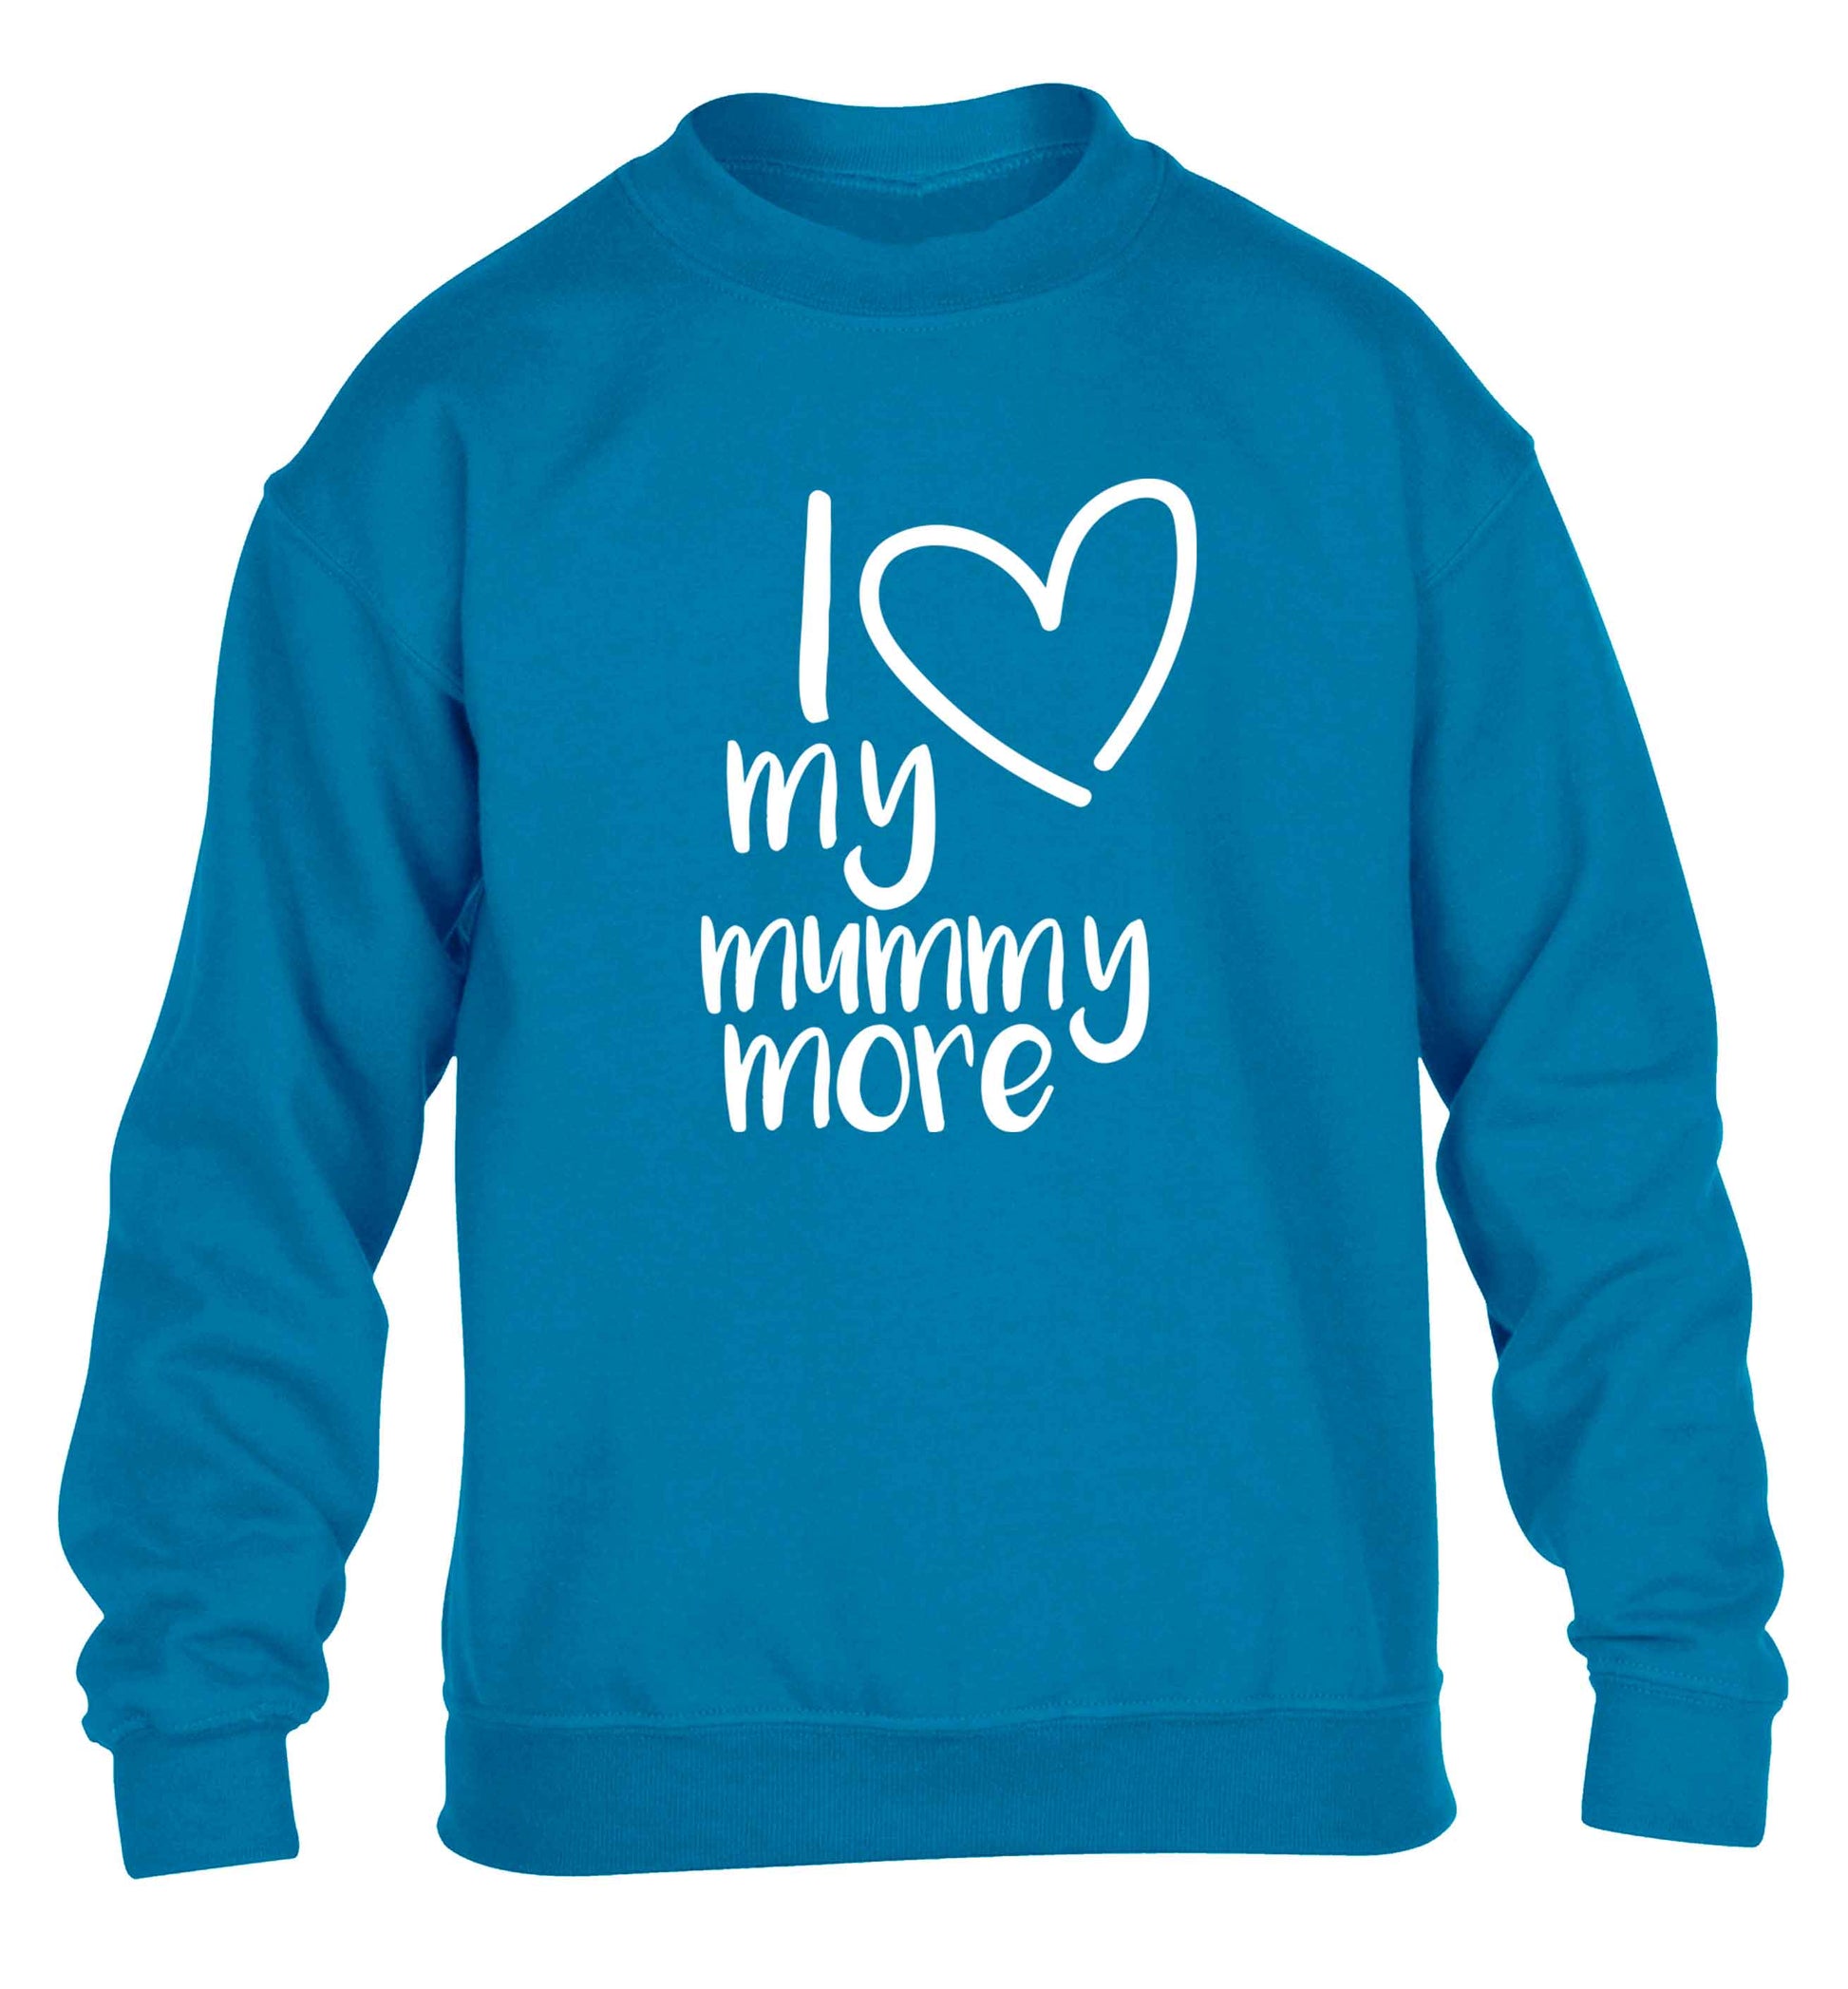 I love my mummy more children's blue sweater 12-13 Years